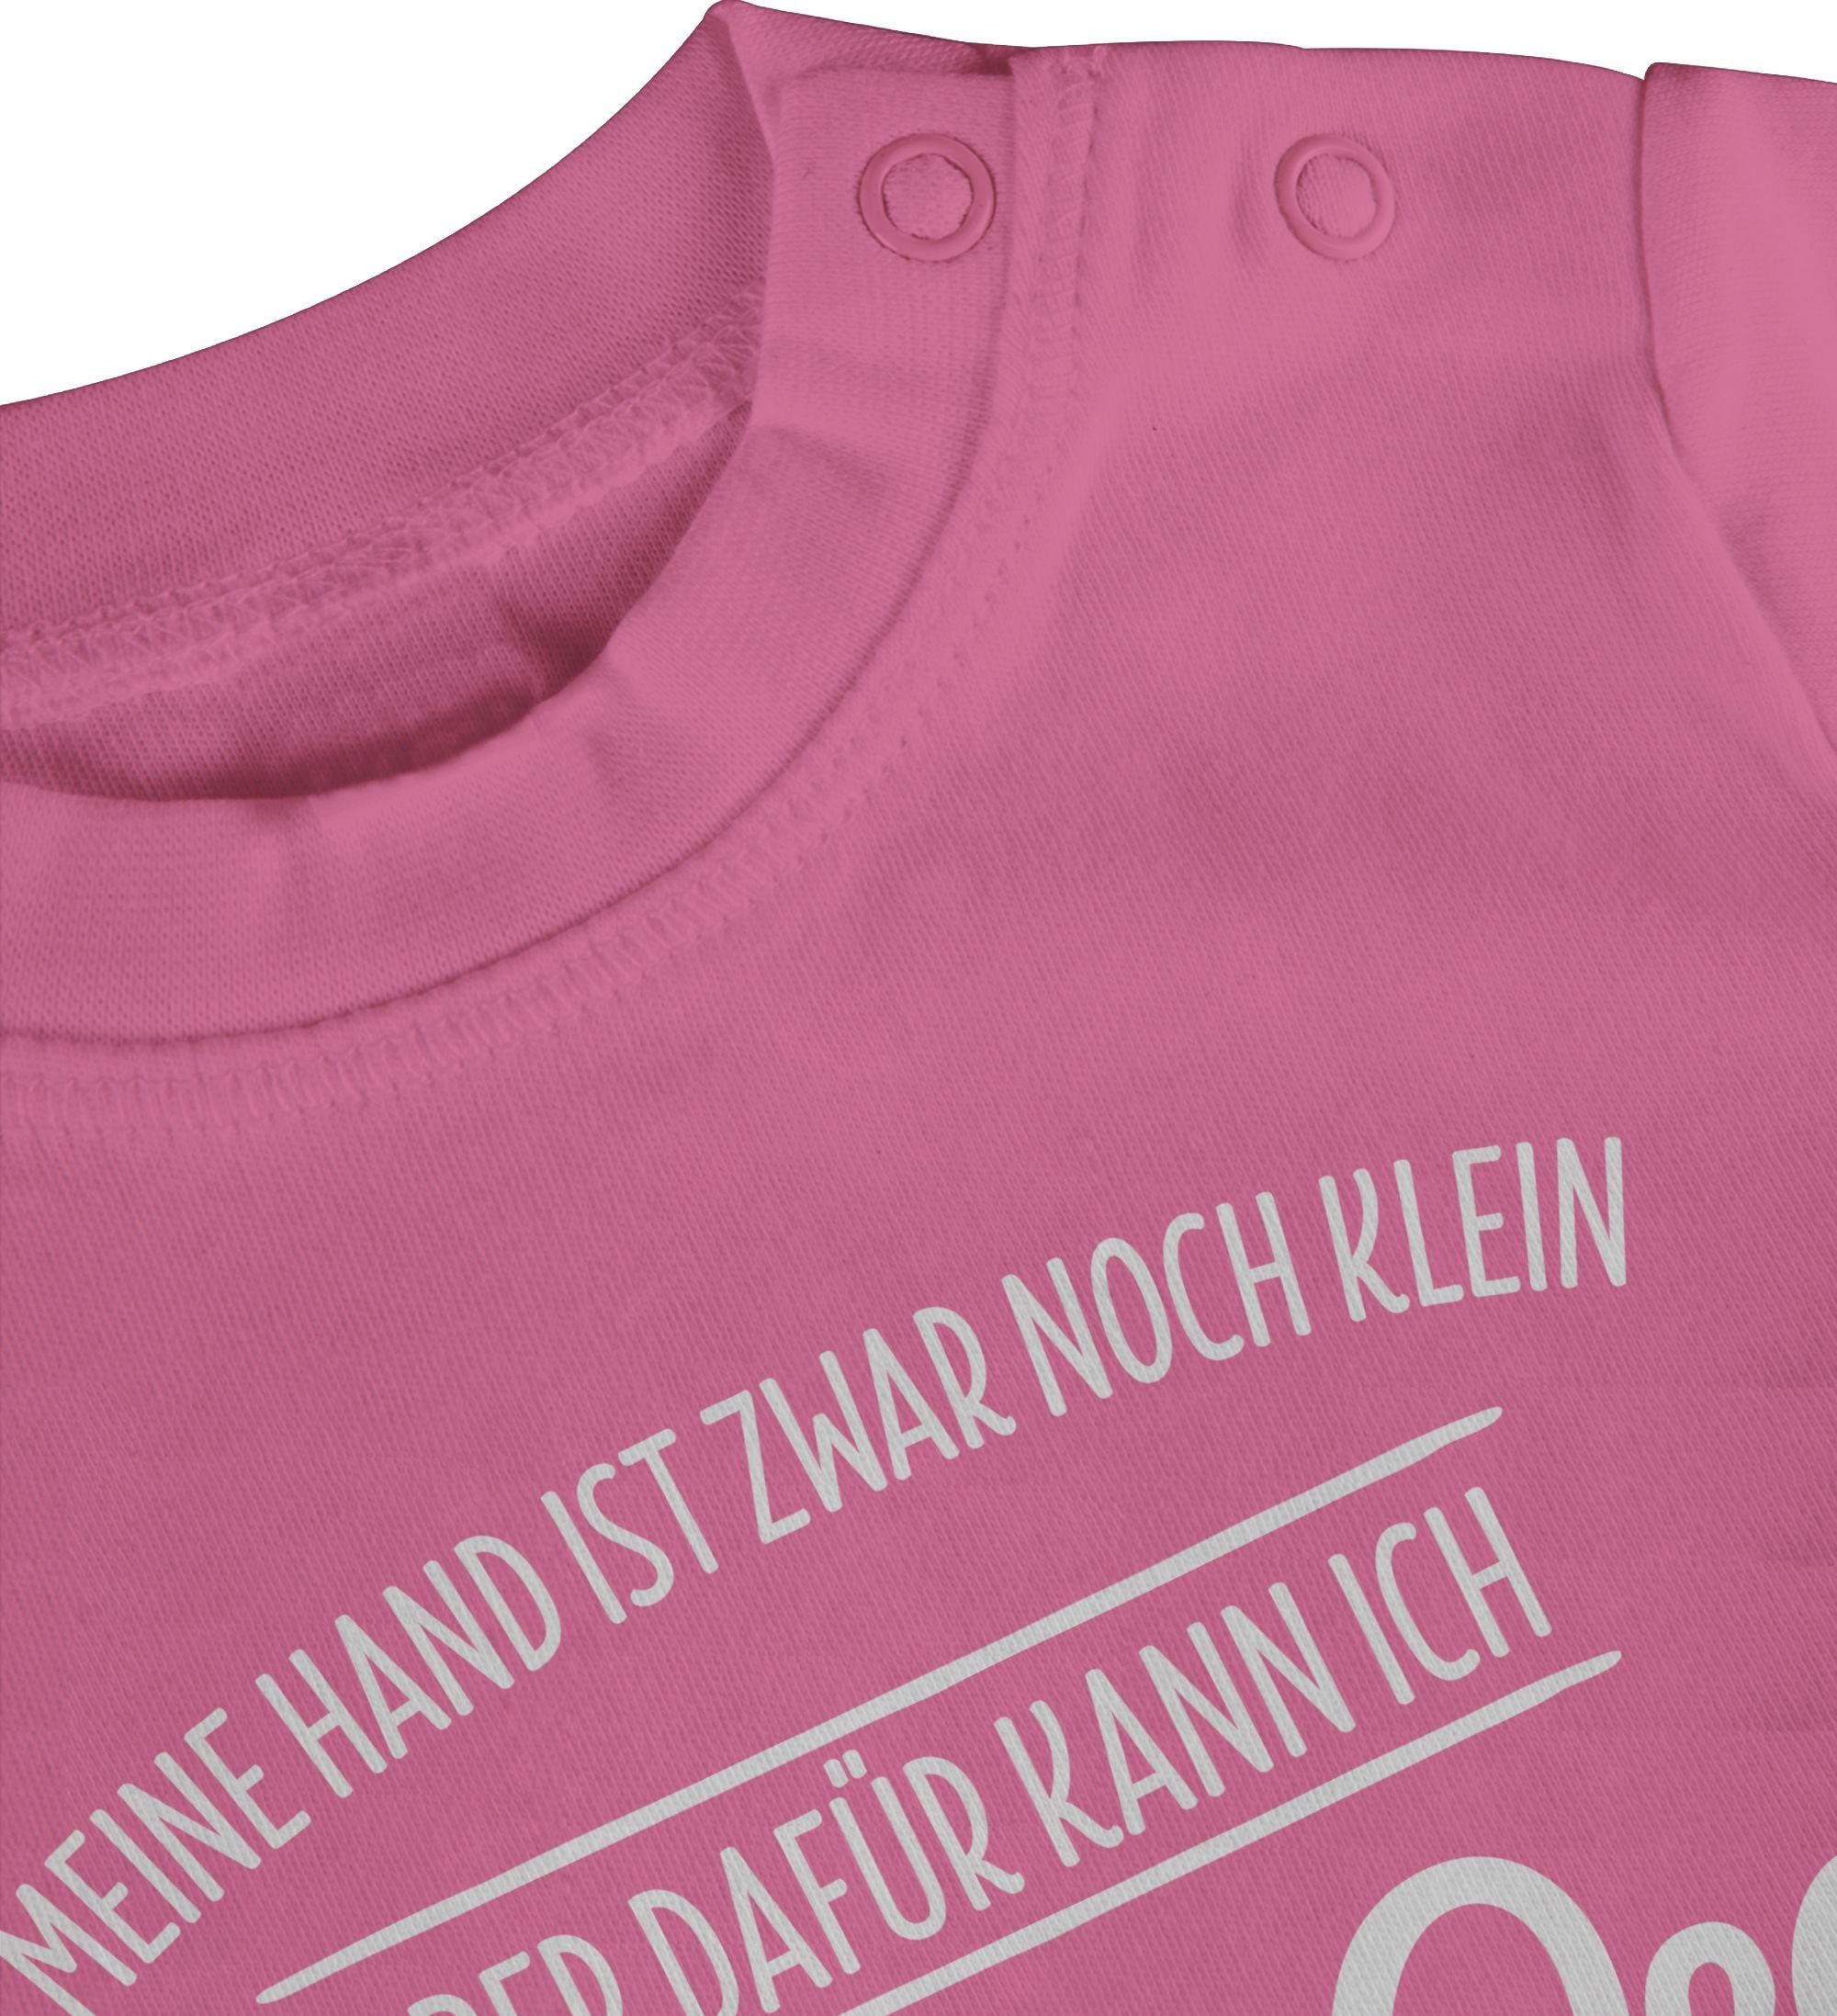 Shirtracer T-Shirt Oma den 1 wickeln um Baby Pink Großeltern Opa Finger Sprüche und